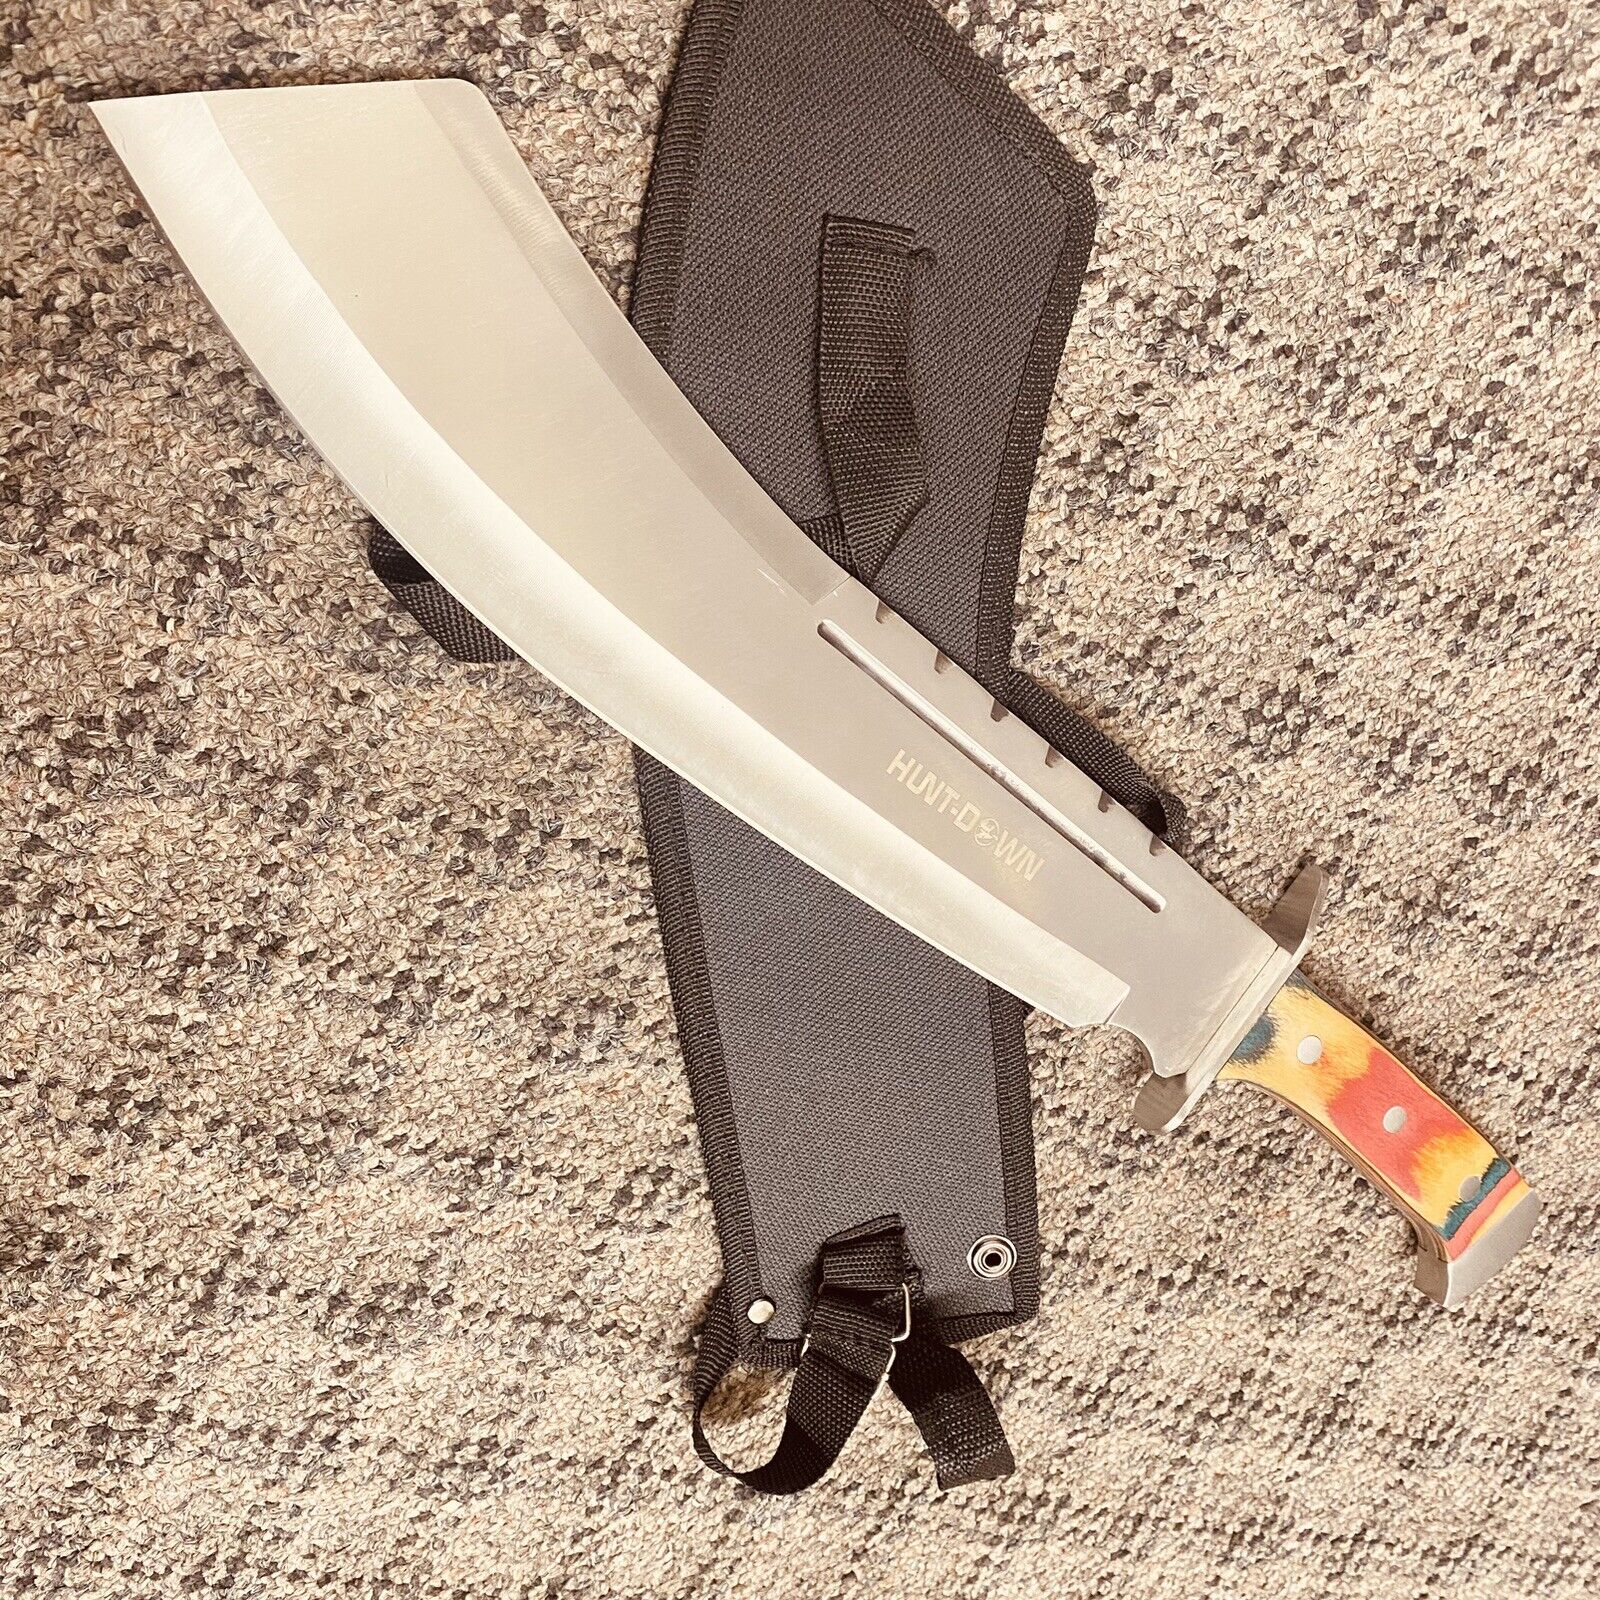 Full Tang HUNTING MACHETE KNIFE w/ SHEATH Fixed Blade Wood Handle 3CR13 -18.5”